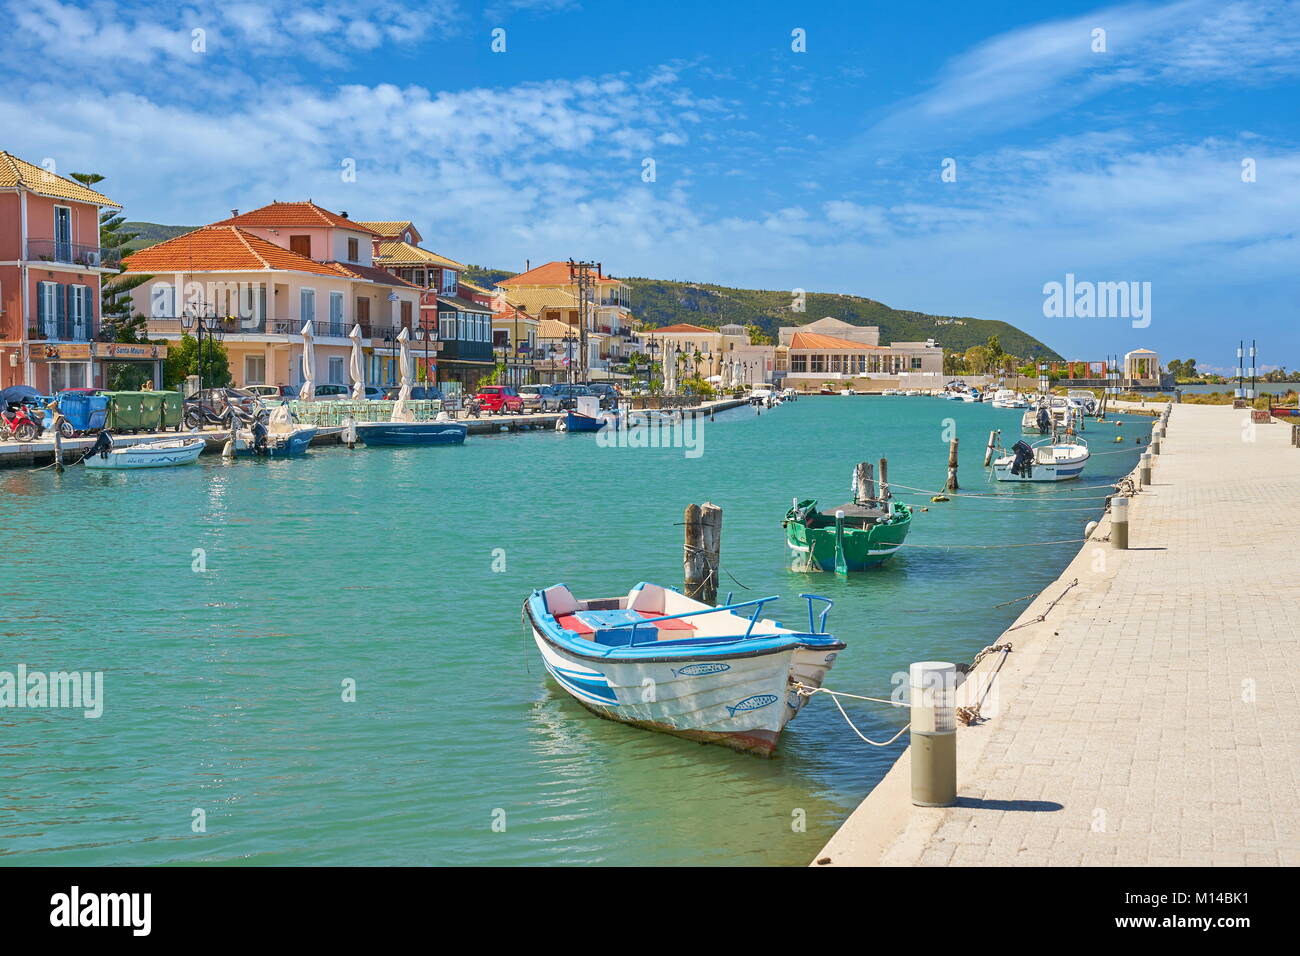 Lefkada town, Lefkada Island, Greece Stock Photo